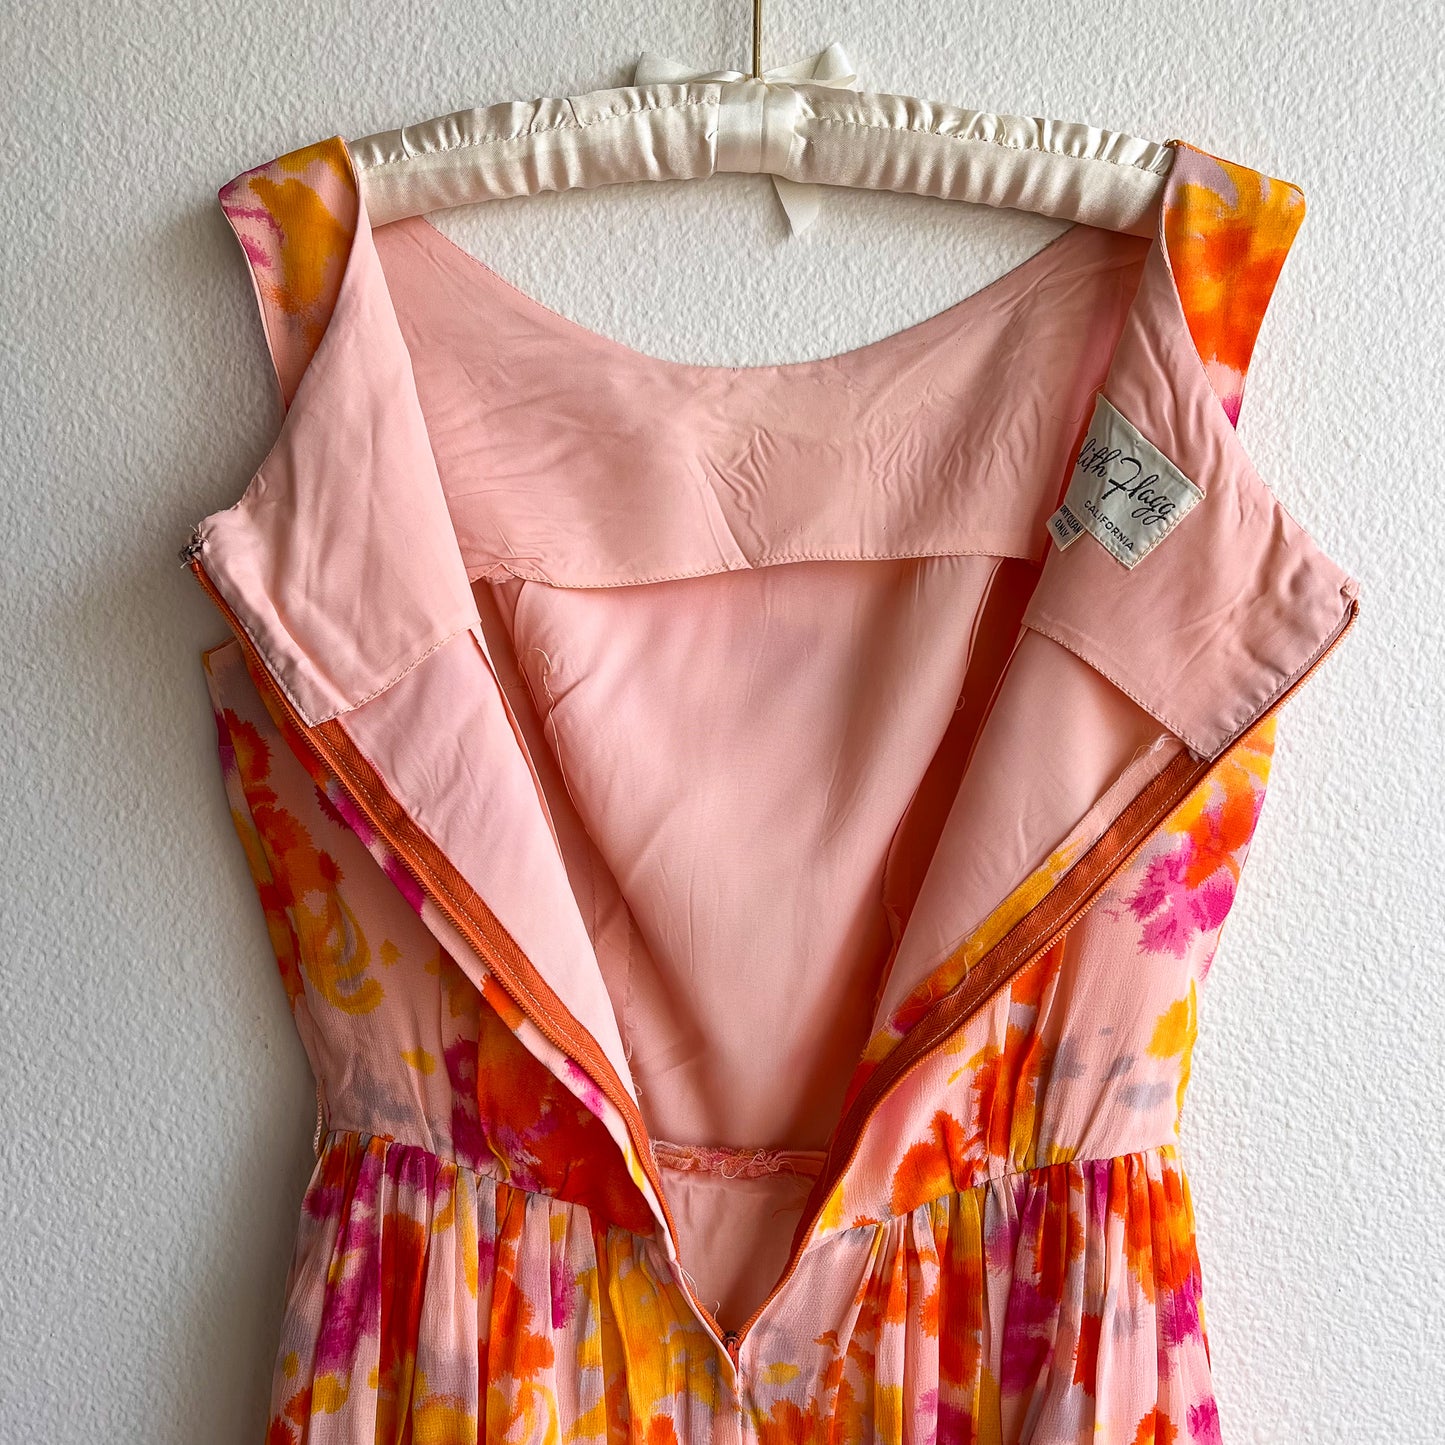 1950s Bright Orange and Pink Chiffon Party Dress (XS/S)